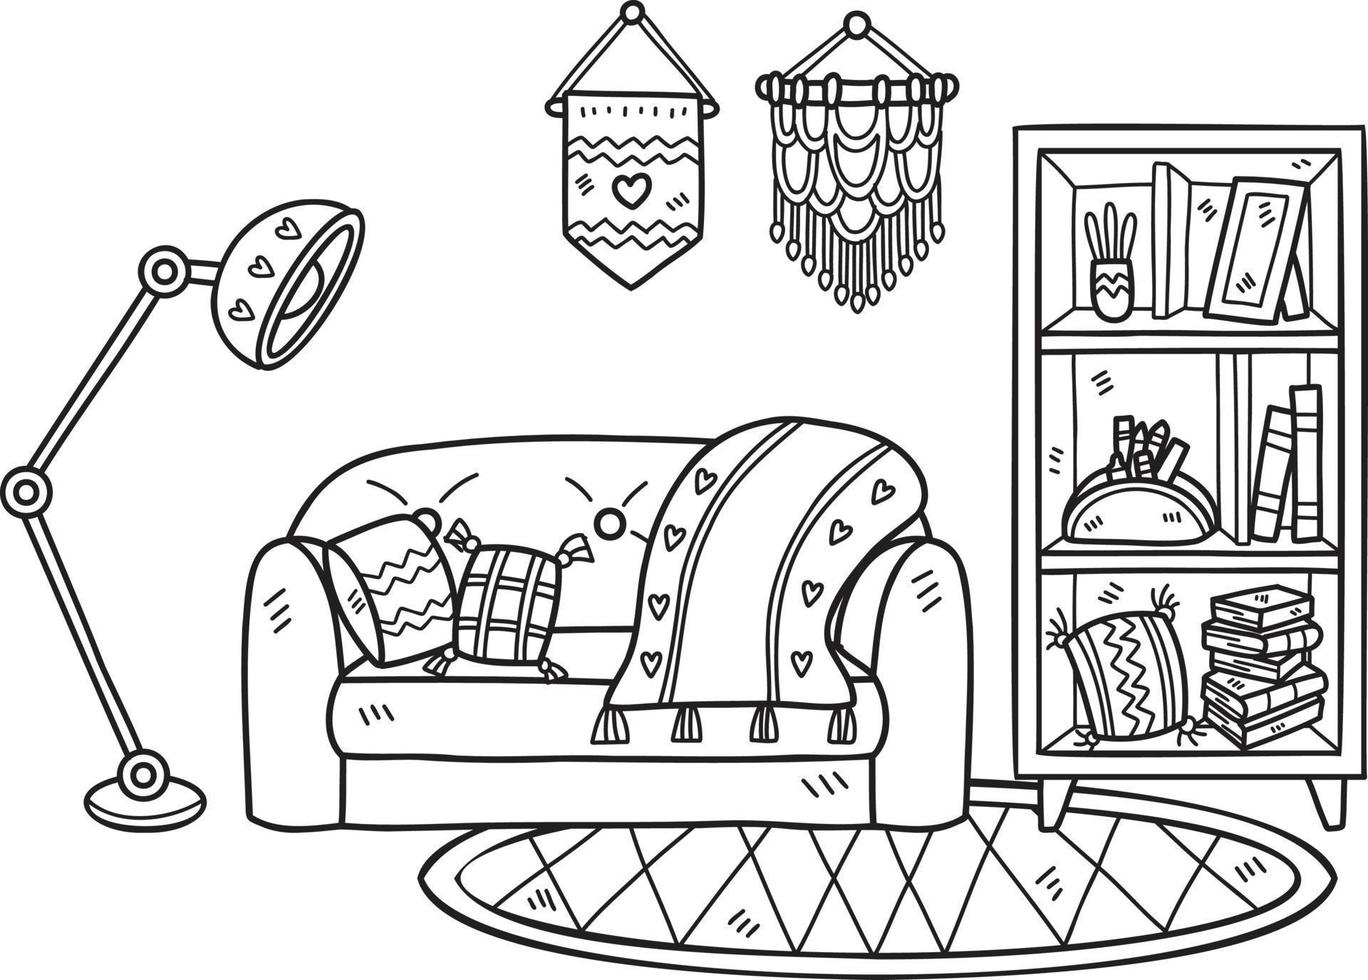 sofá dibujado a mano con lámparas y estantes ilustración de la habitación interior vector